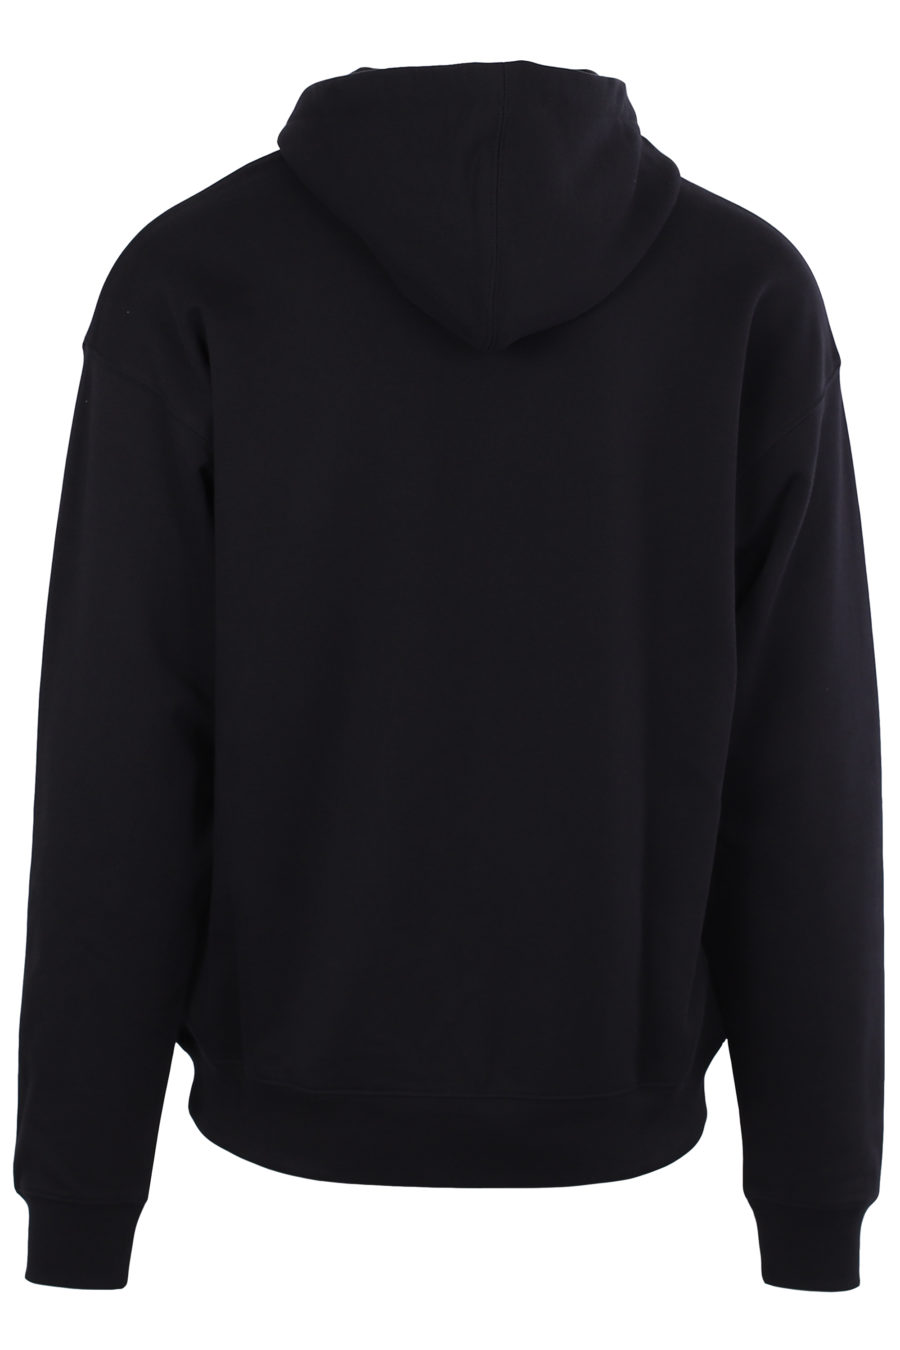 Schwarzes Sweatshirt mit gesticktem Logo - IMG 0005